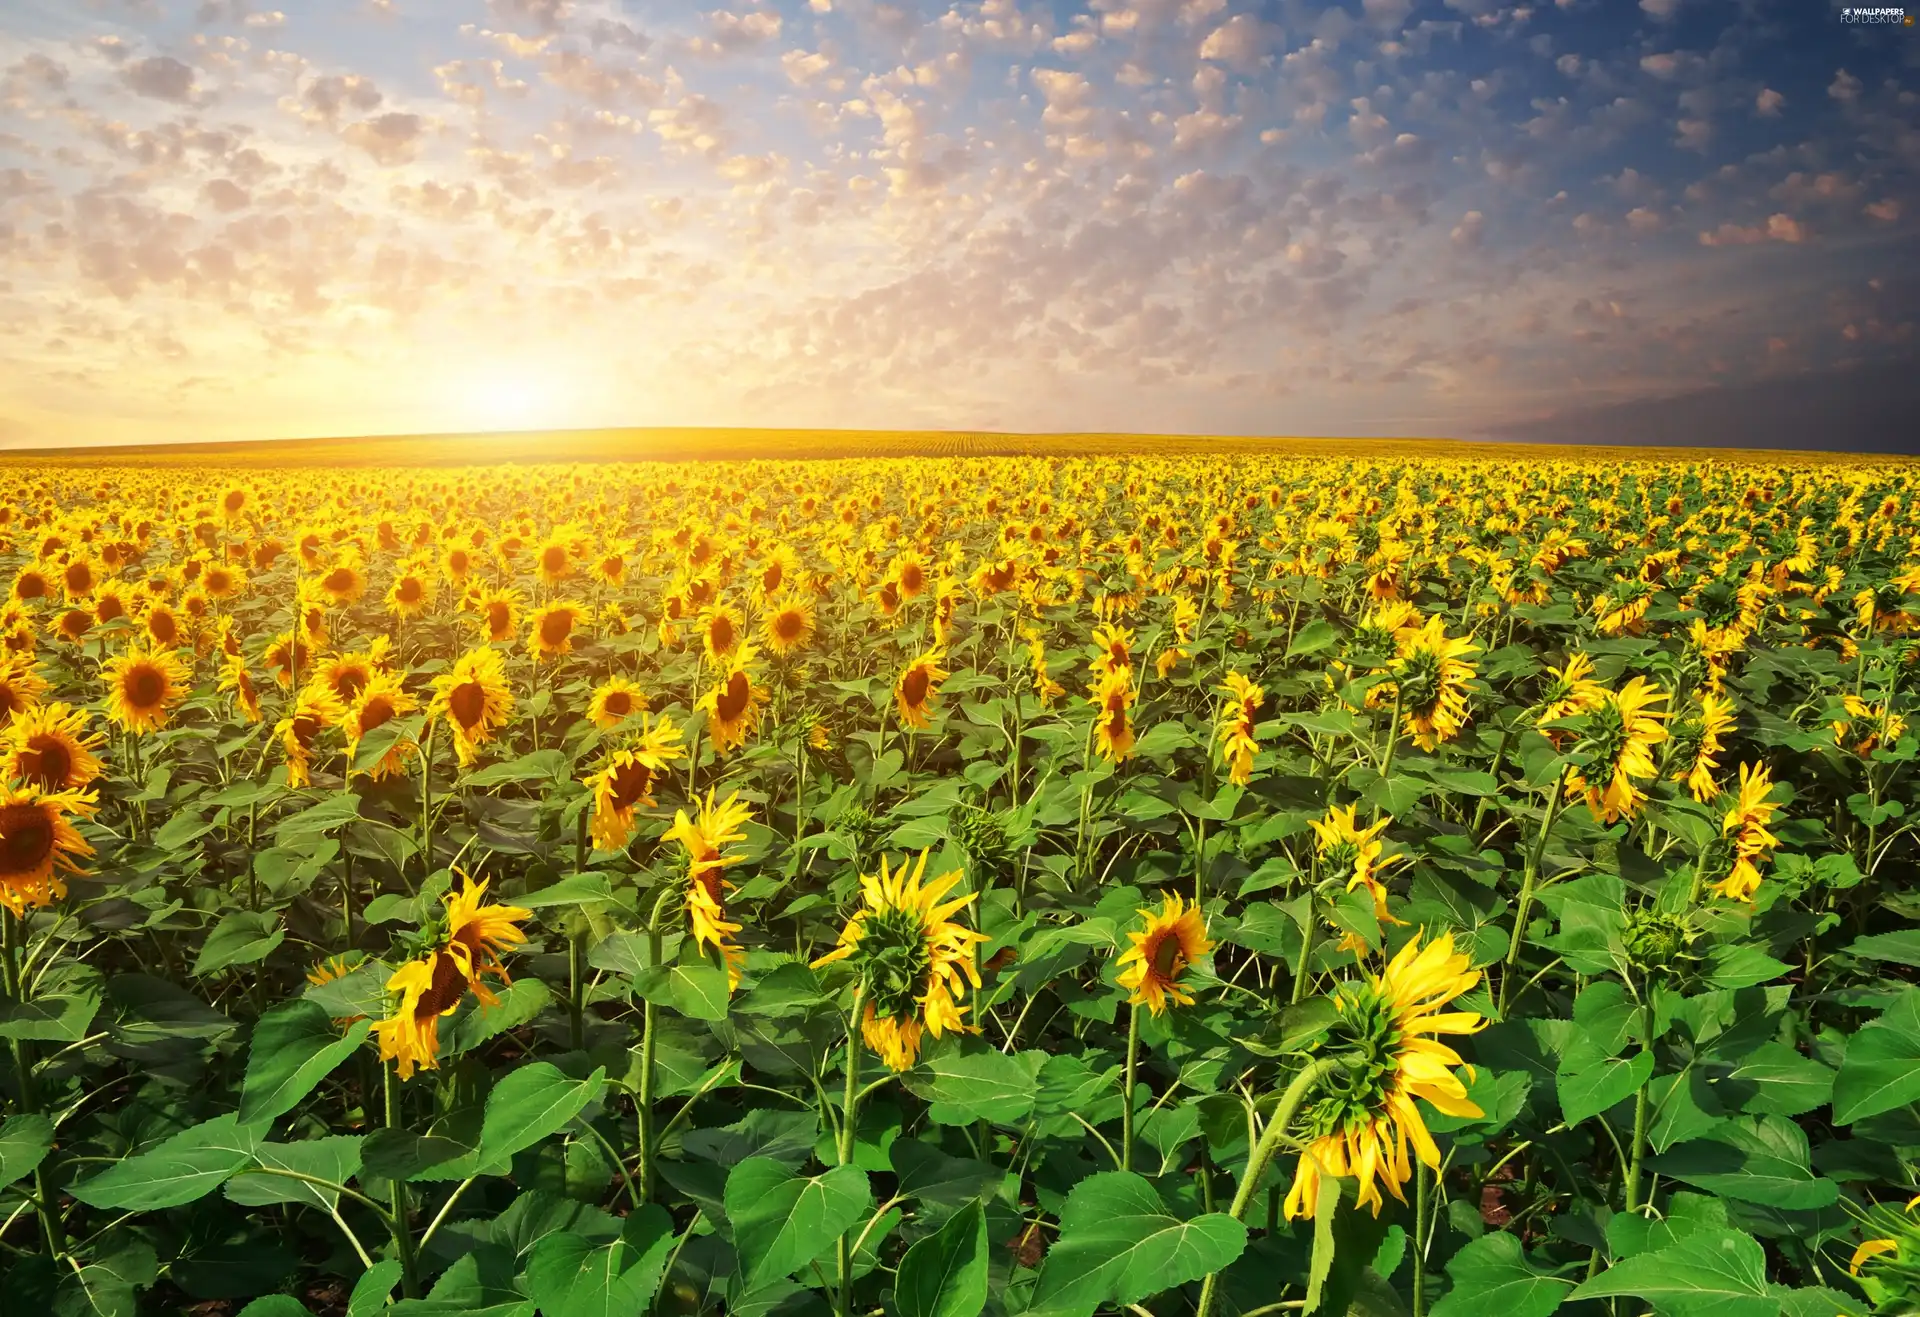 west, Nice sunflowers, field, sun